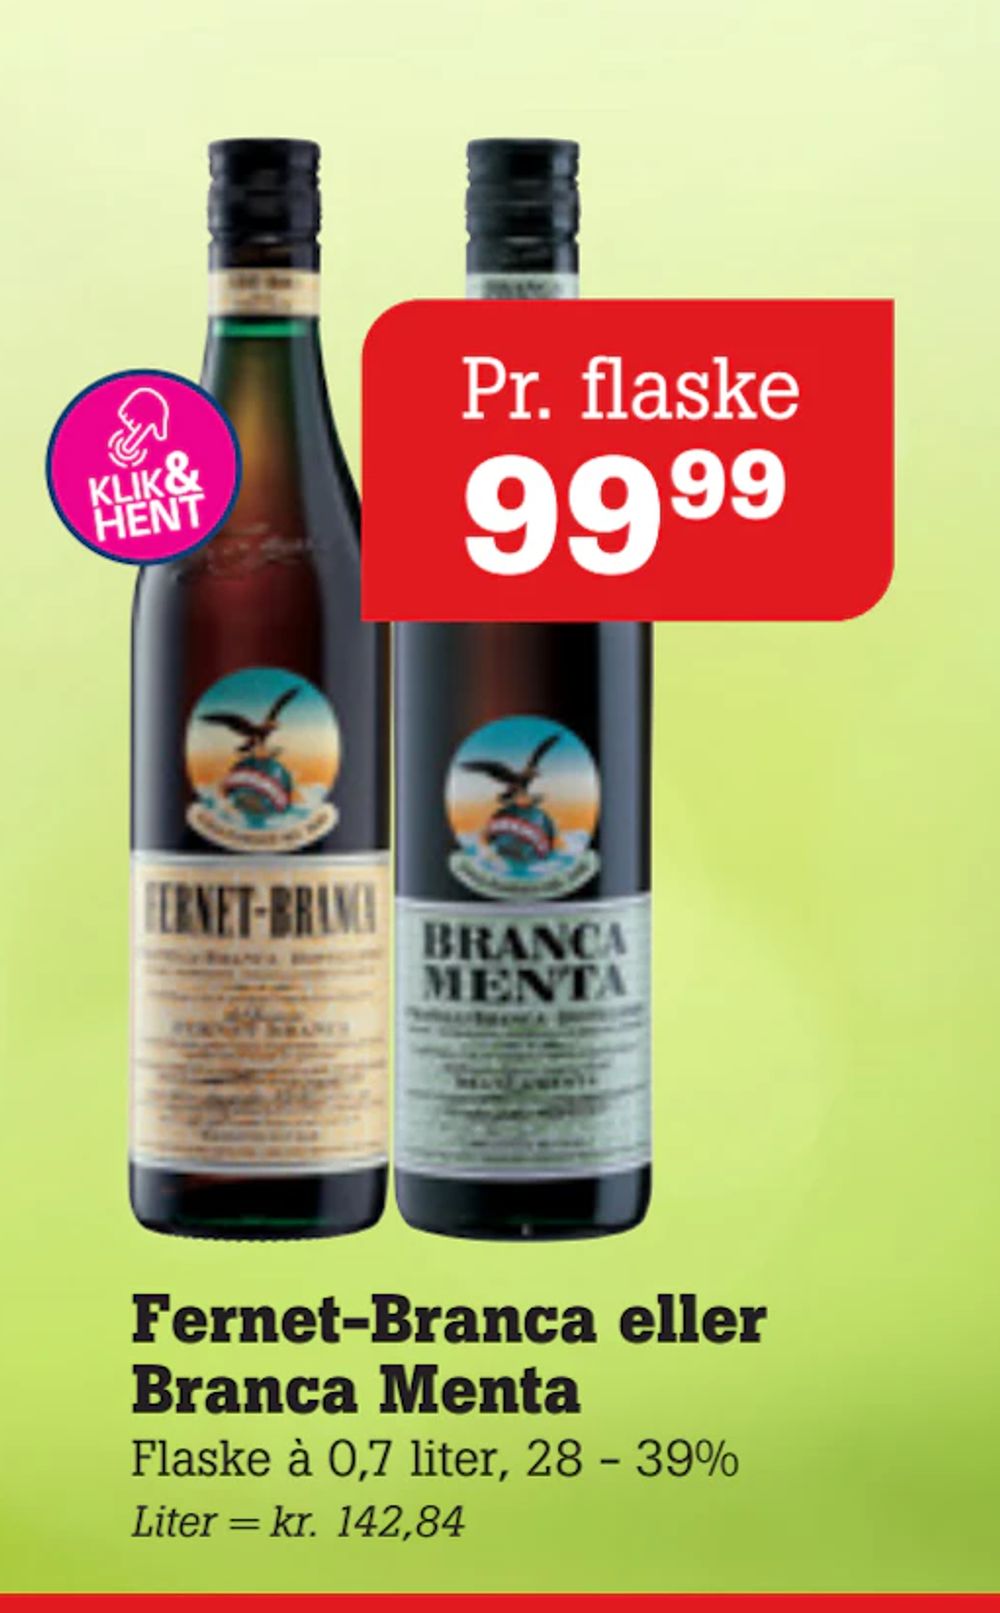 Tilbud på Fernet-Branca eller Branca Menta fra Poetzsch Padborg til 99,99 kr.